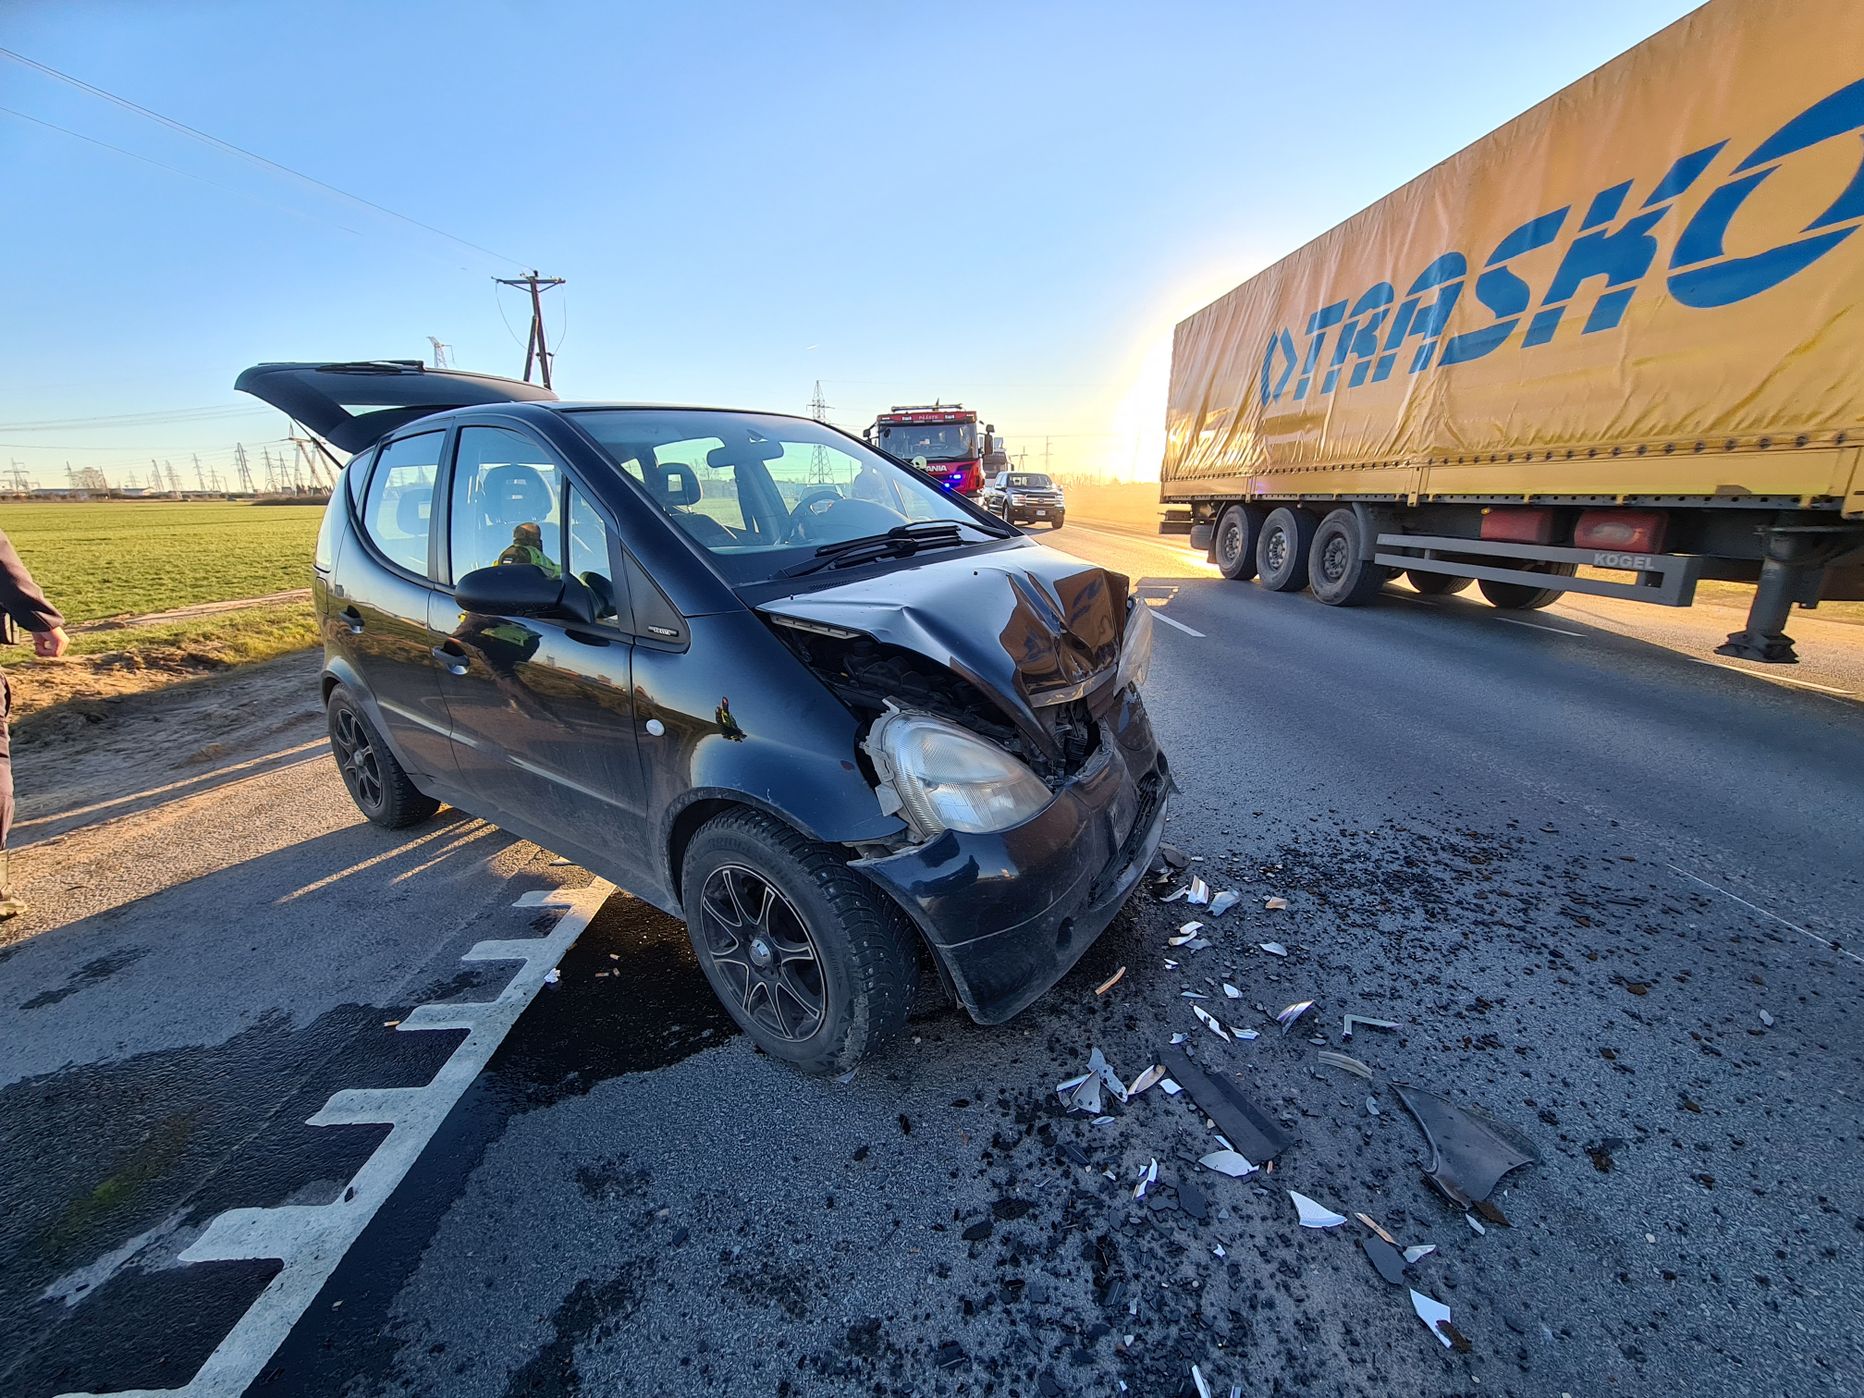 Liiklusõnnetus Tallinna-Tartu maanteel Ilmatsalu ringi lähistel sirgel teelõigul.